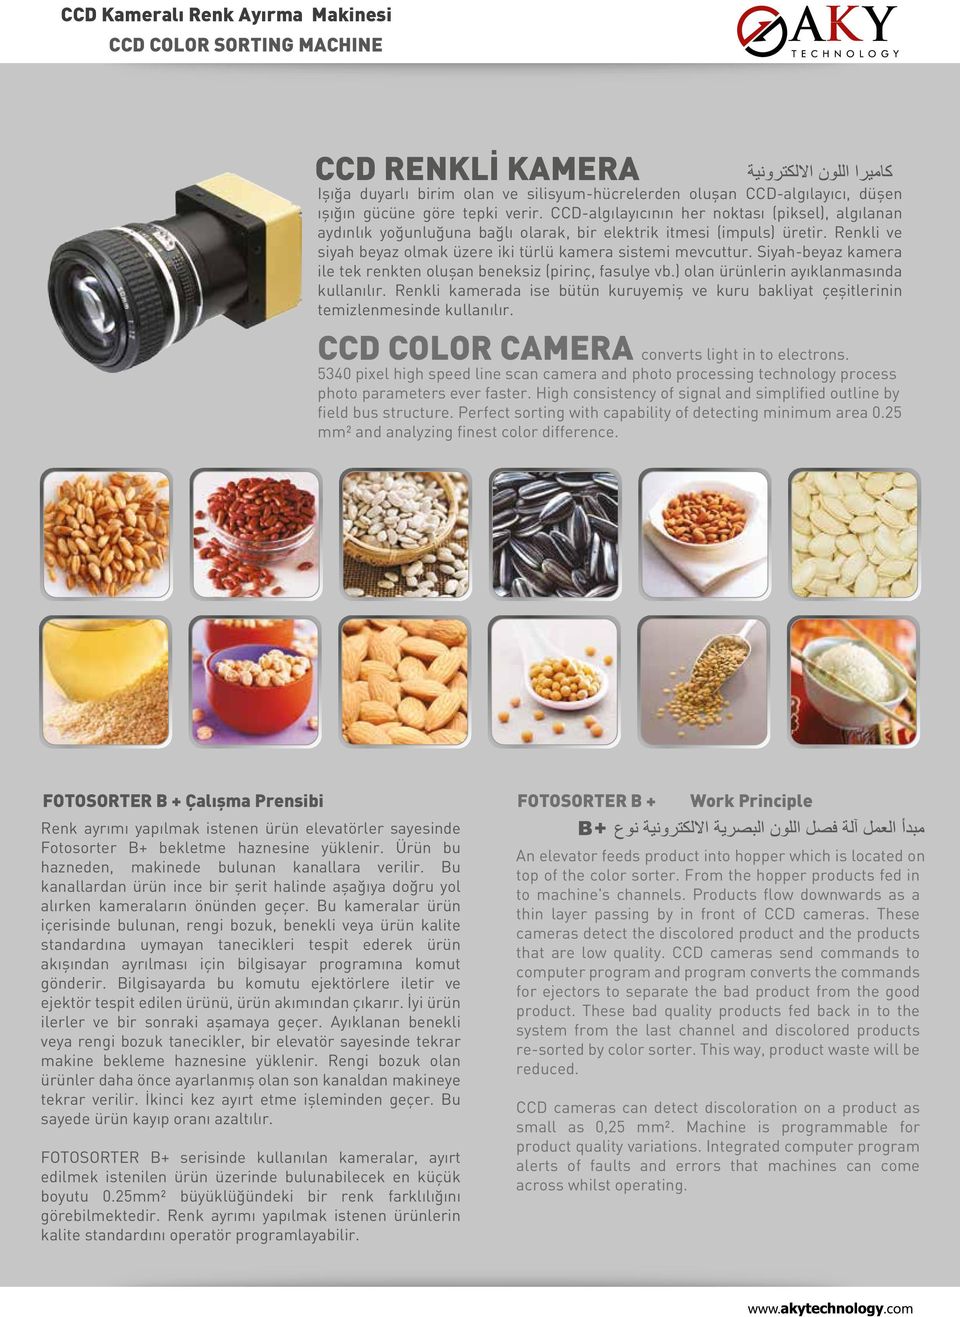 Siyah-beyaz kamera ile tek renkten oluşan beneksiz (pirinç, fasulye vb.) olan ürünlerin ayıklanmasında kullanılır.